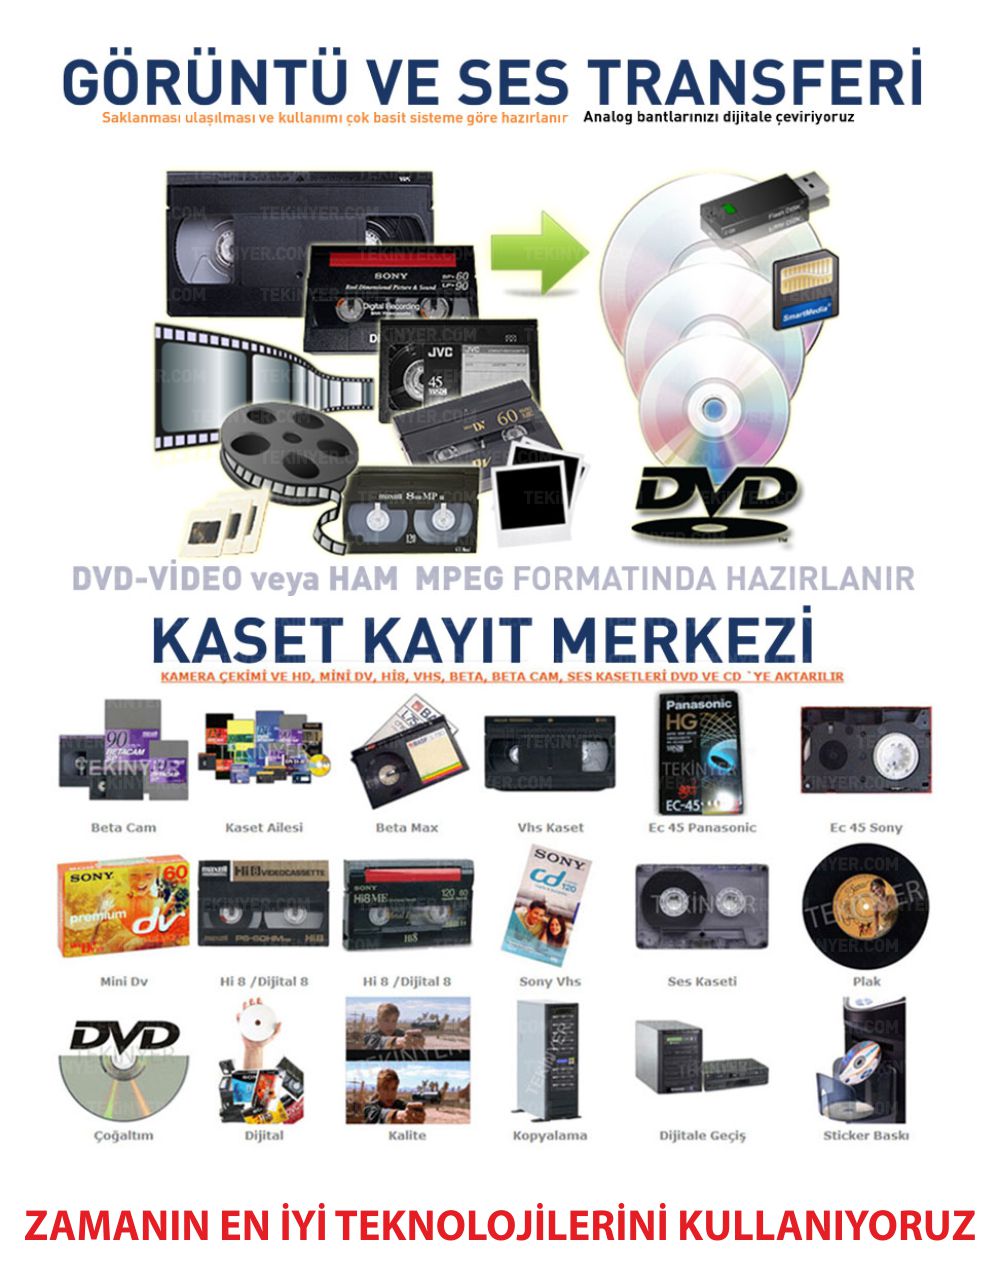 Video Kasetten HDD yada USB Bullege Kasetten Zamanın en iyi teknolijilerini kullanana Aktarım Kayıt Merkezi